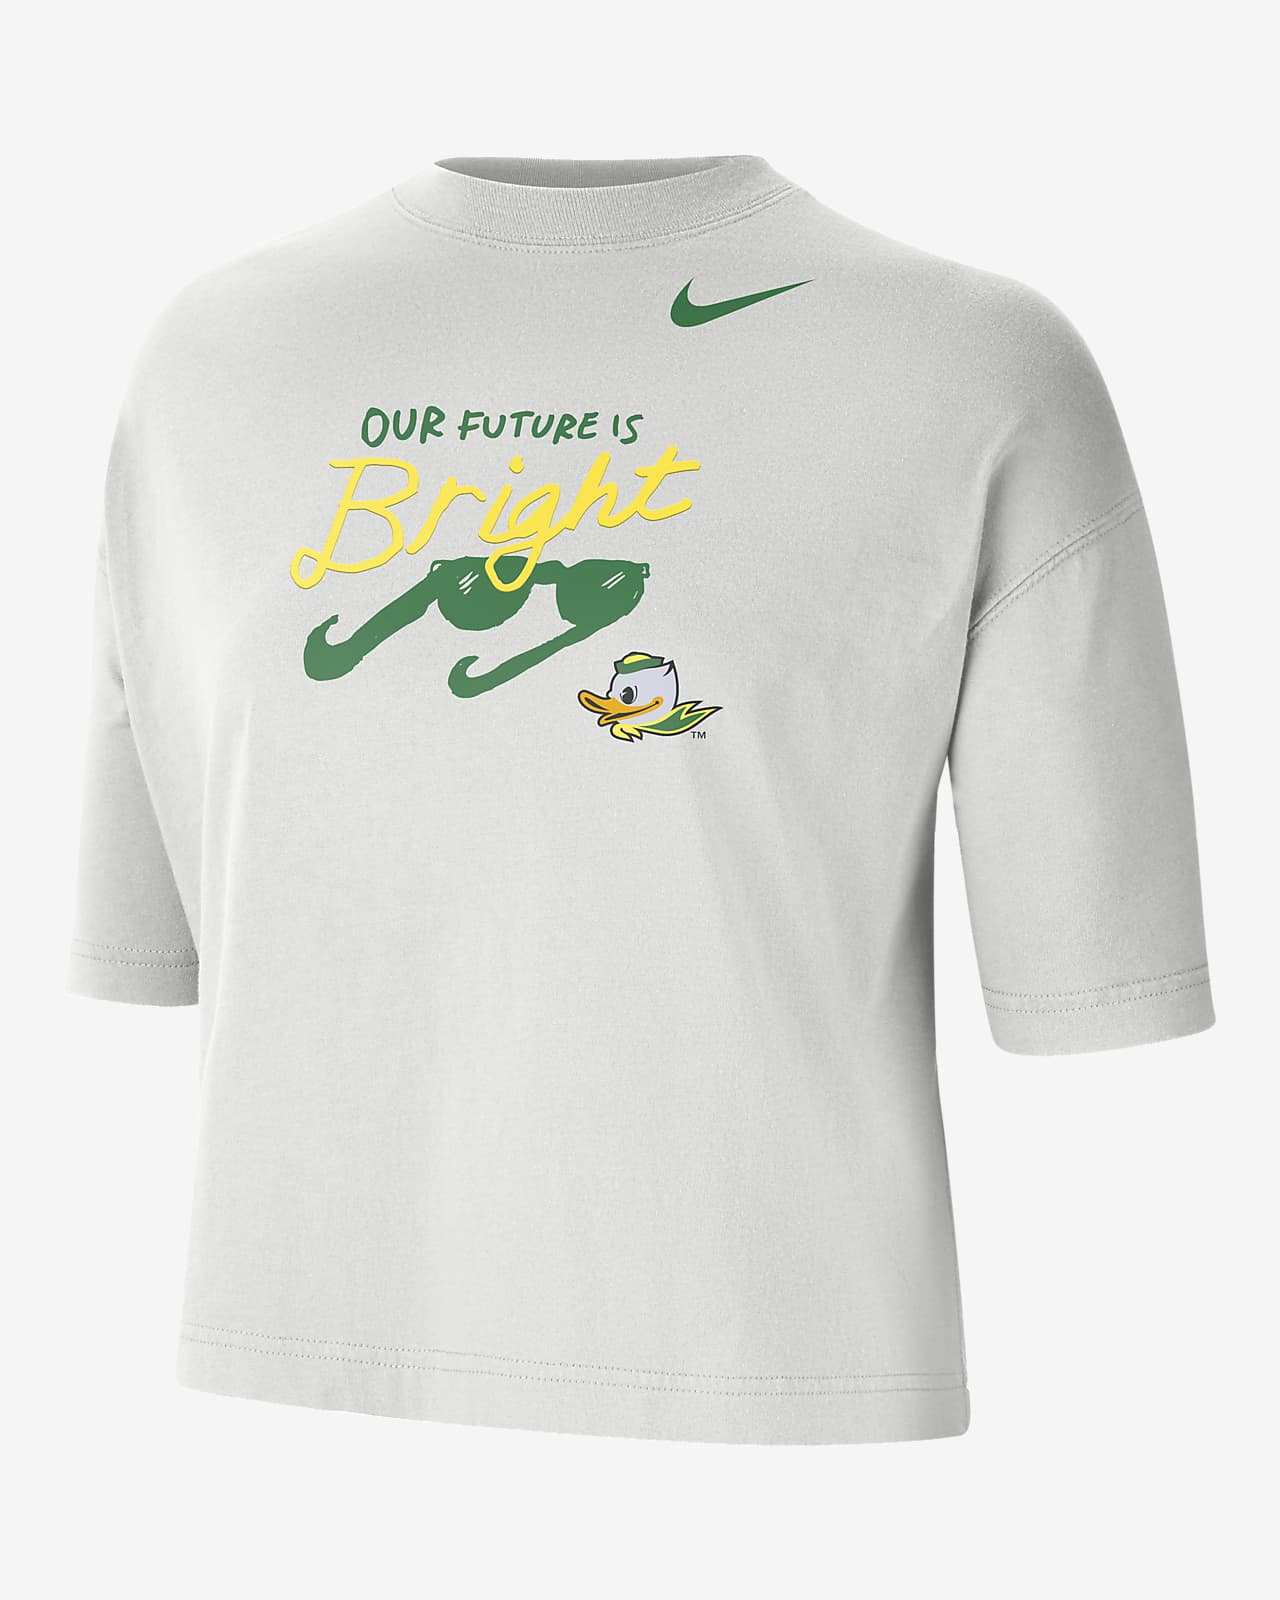 Oregon Women's Nike College T-Shirt